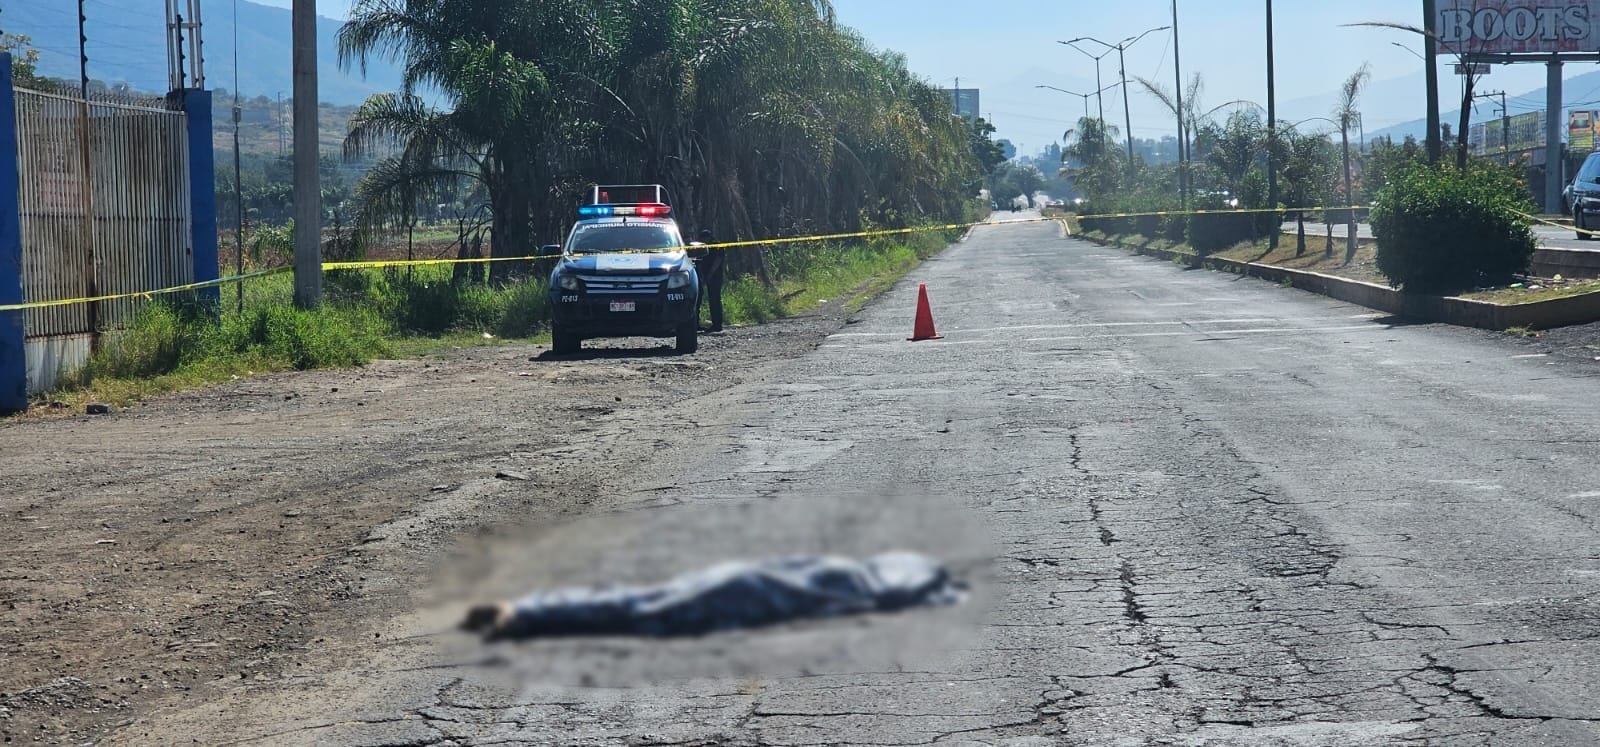 Desconocido muere atropellado frente a la Central Camionera de Zamora